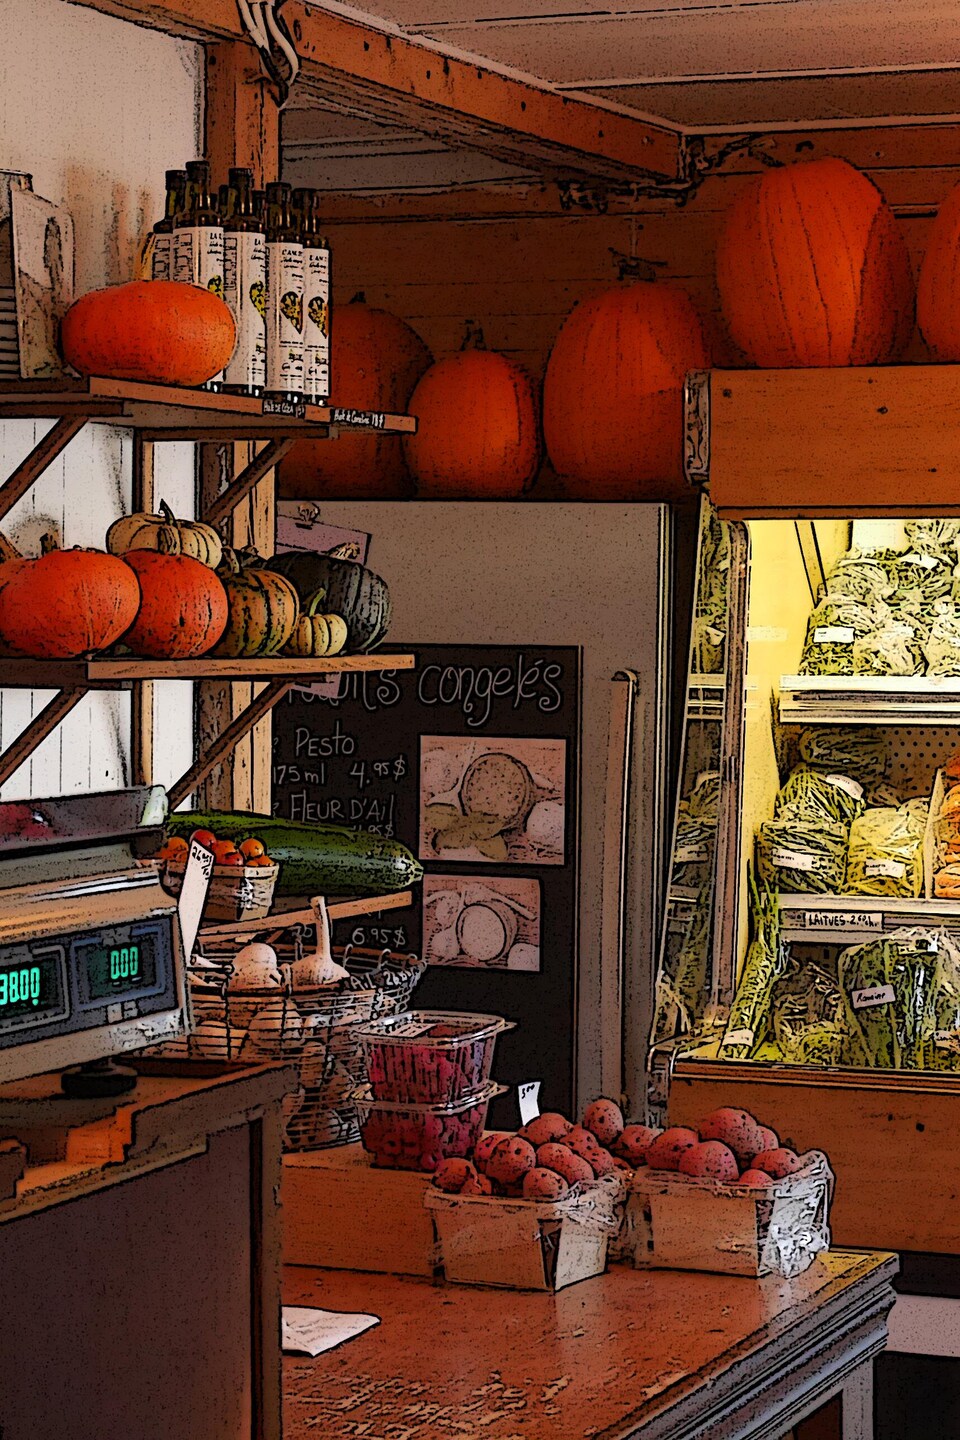 Le comptoir d'un marché fermier où sont posés des citrouilles et différents légumes de saison.